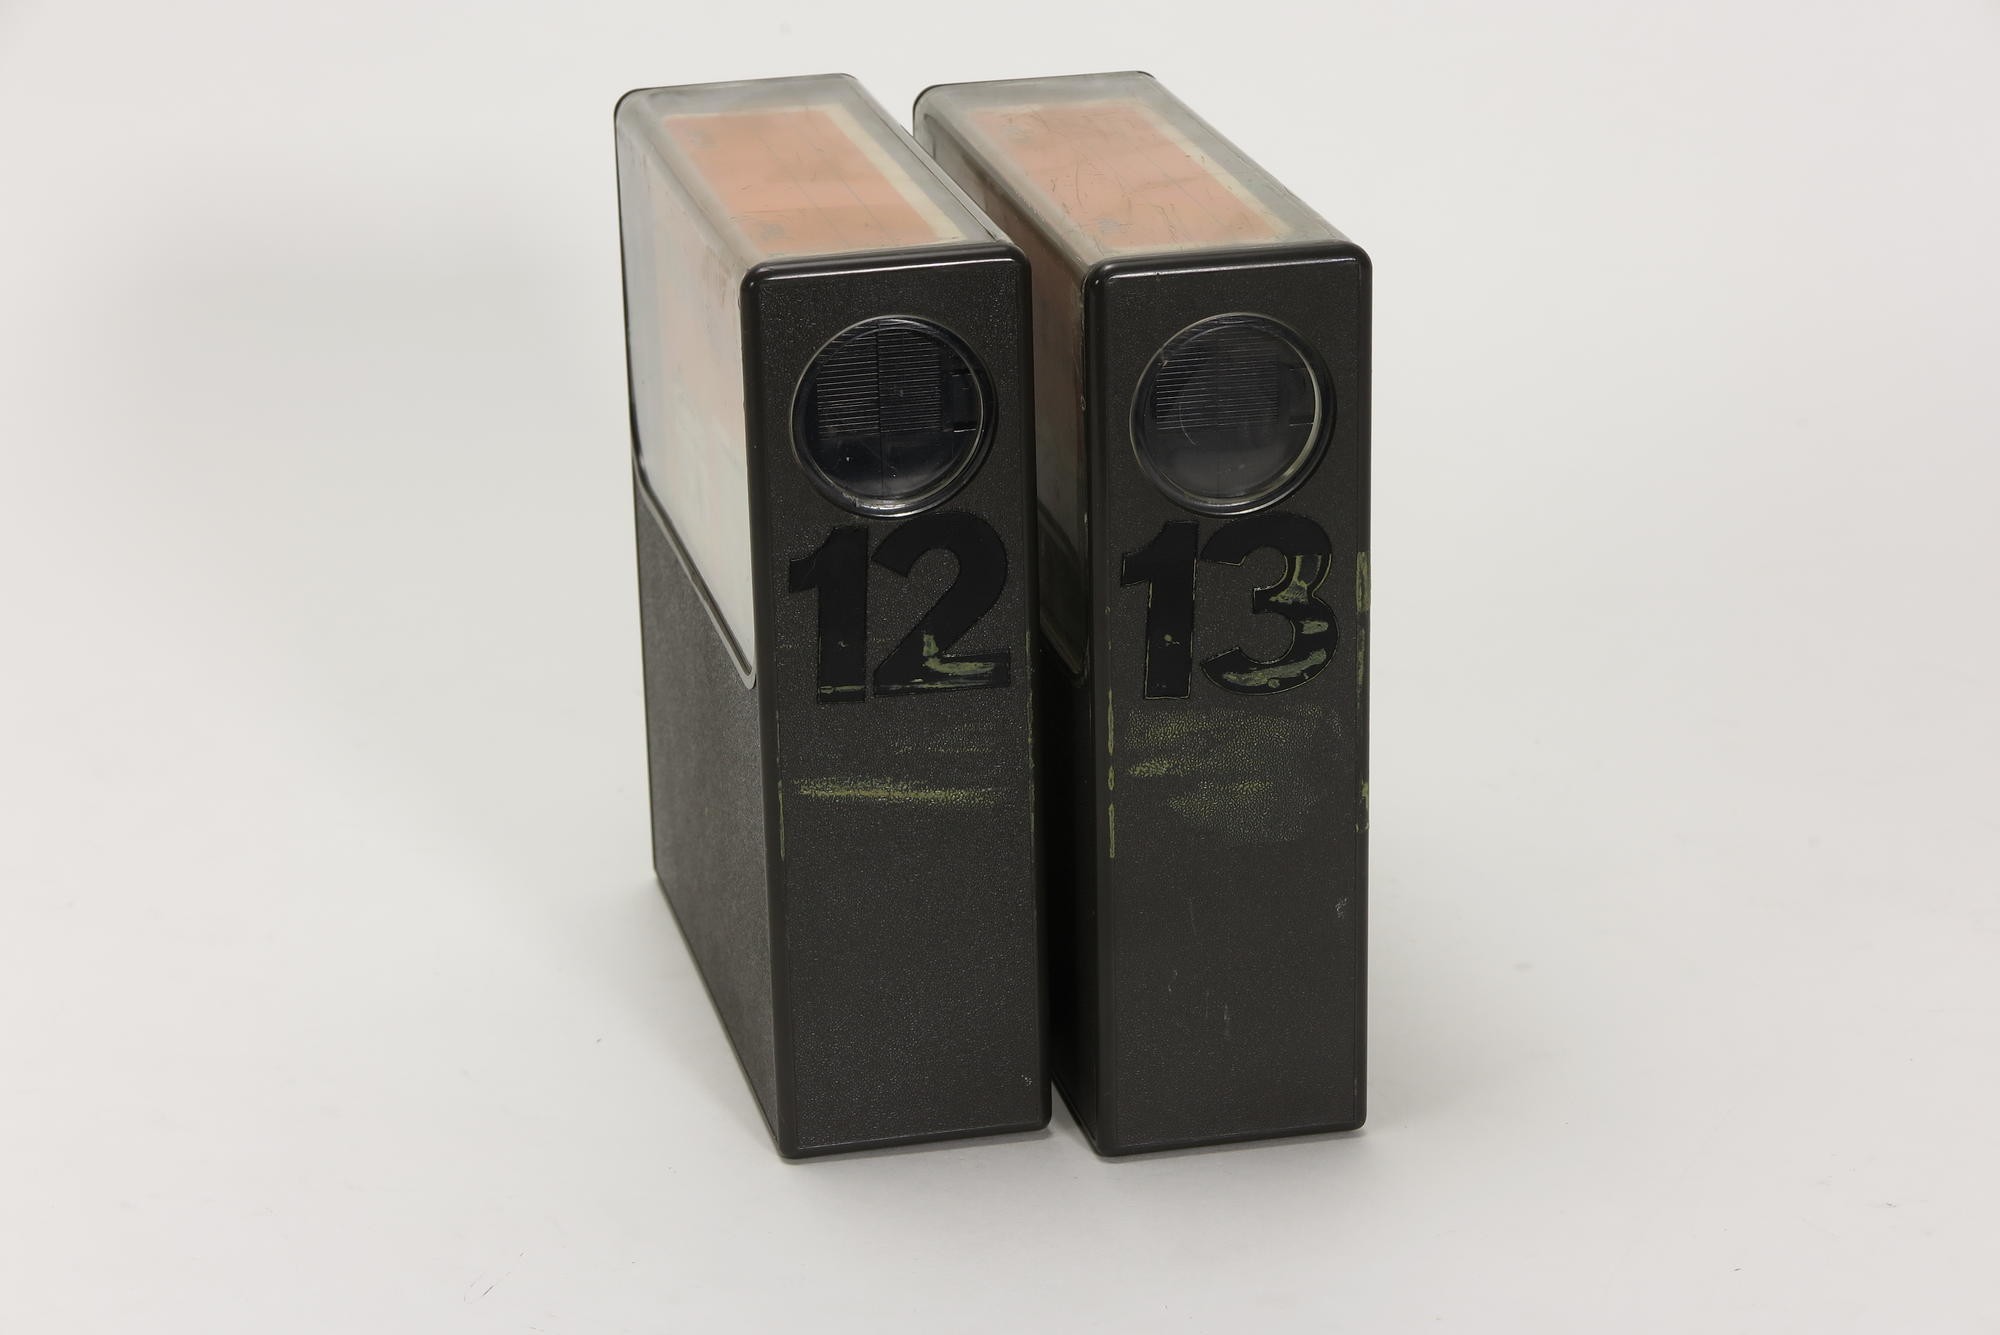 2 x Telefunken VC 60 Videokassetten, Zubehör für Videorecorder Telefunken VR 40 (Stiftung Deutsches Technikmuseum Berlin CC0)